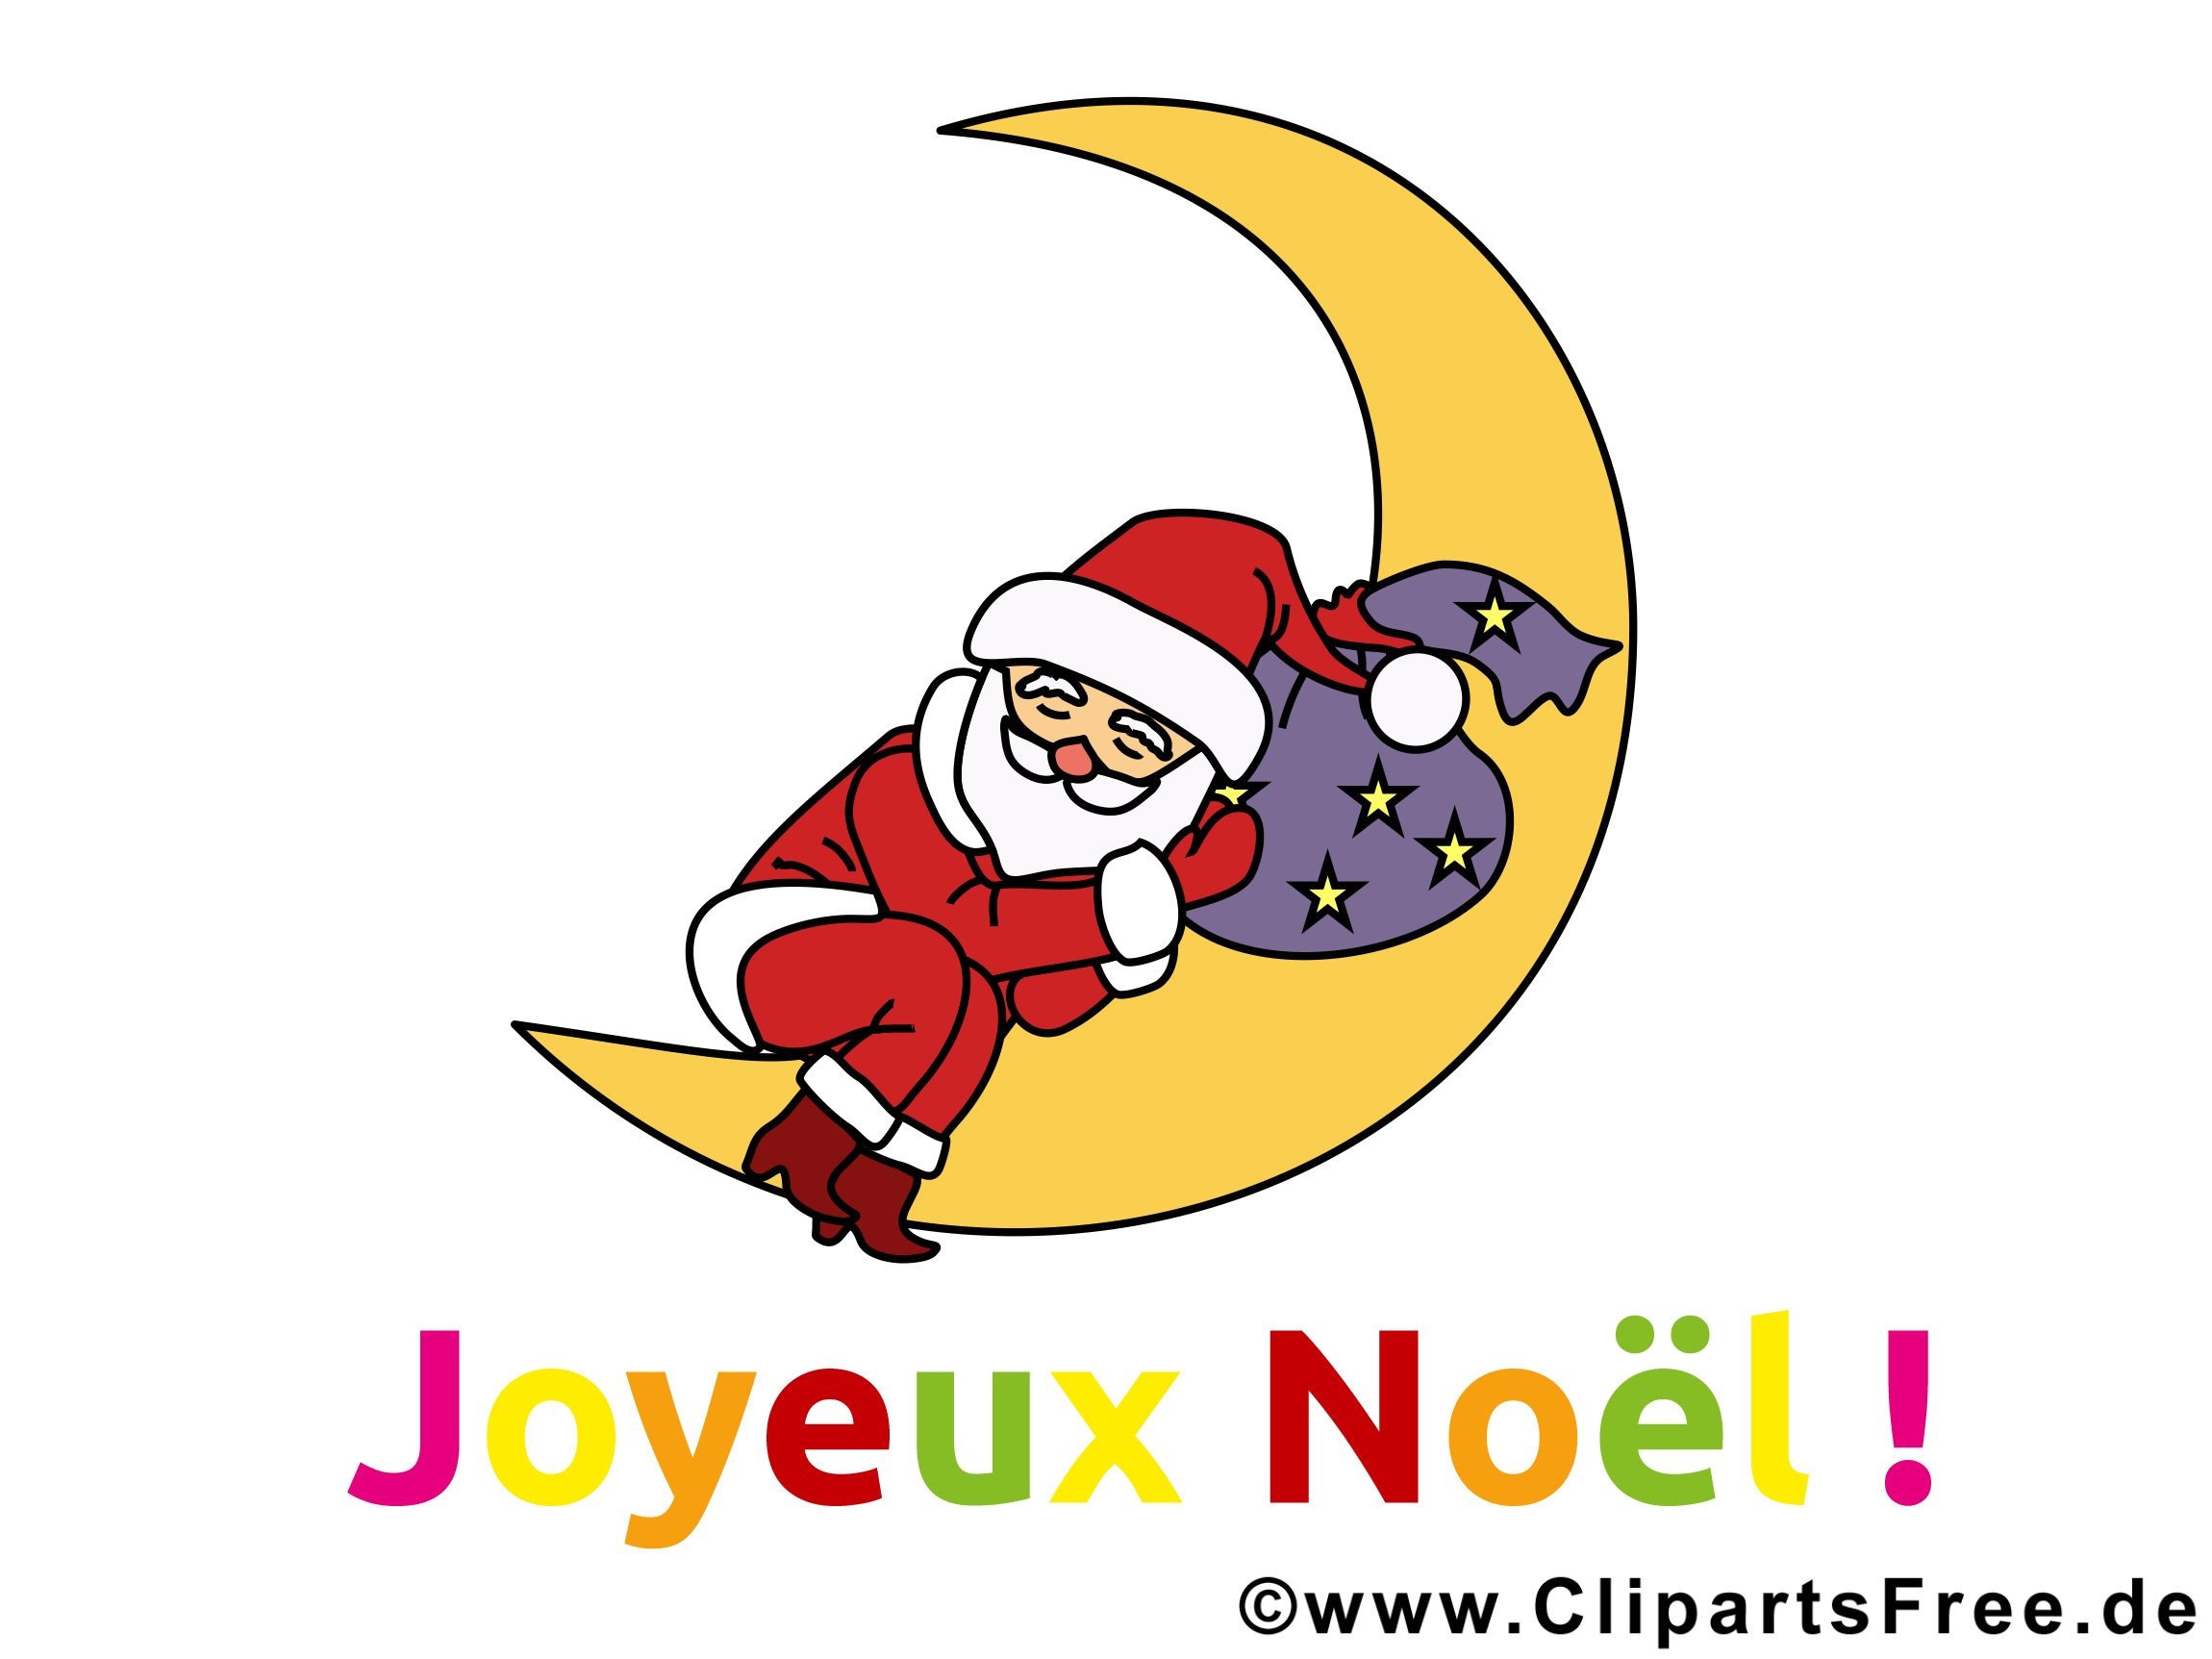 Image De Noel Gratuite Nouveau Carte Virtuelle Joyeux Noël Gratuite Cartes De Noël